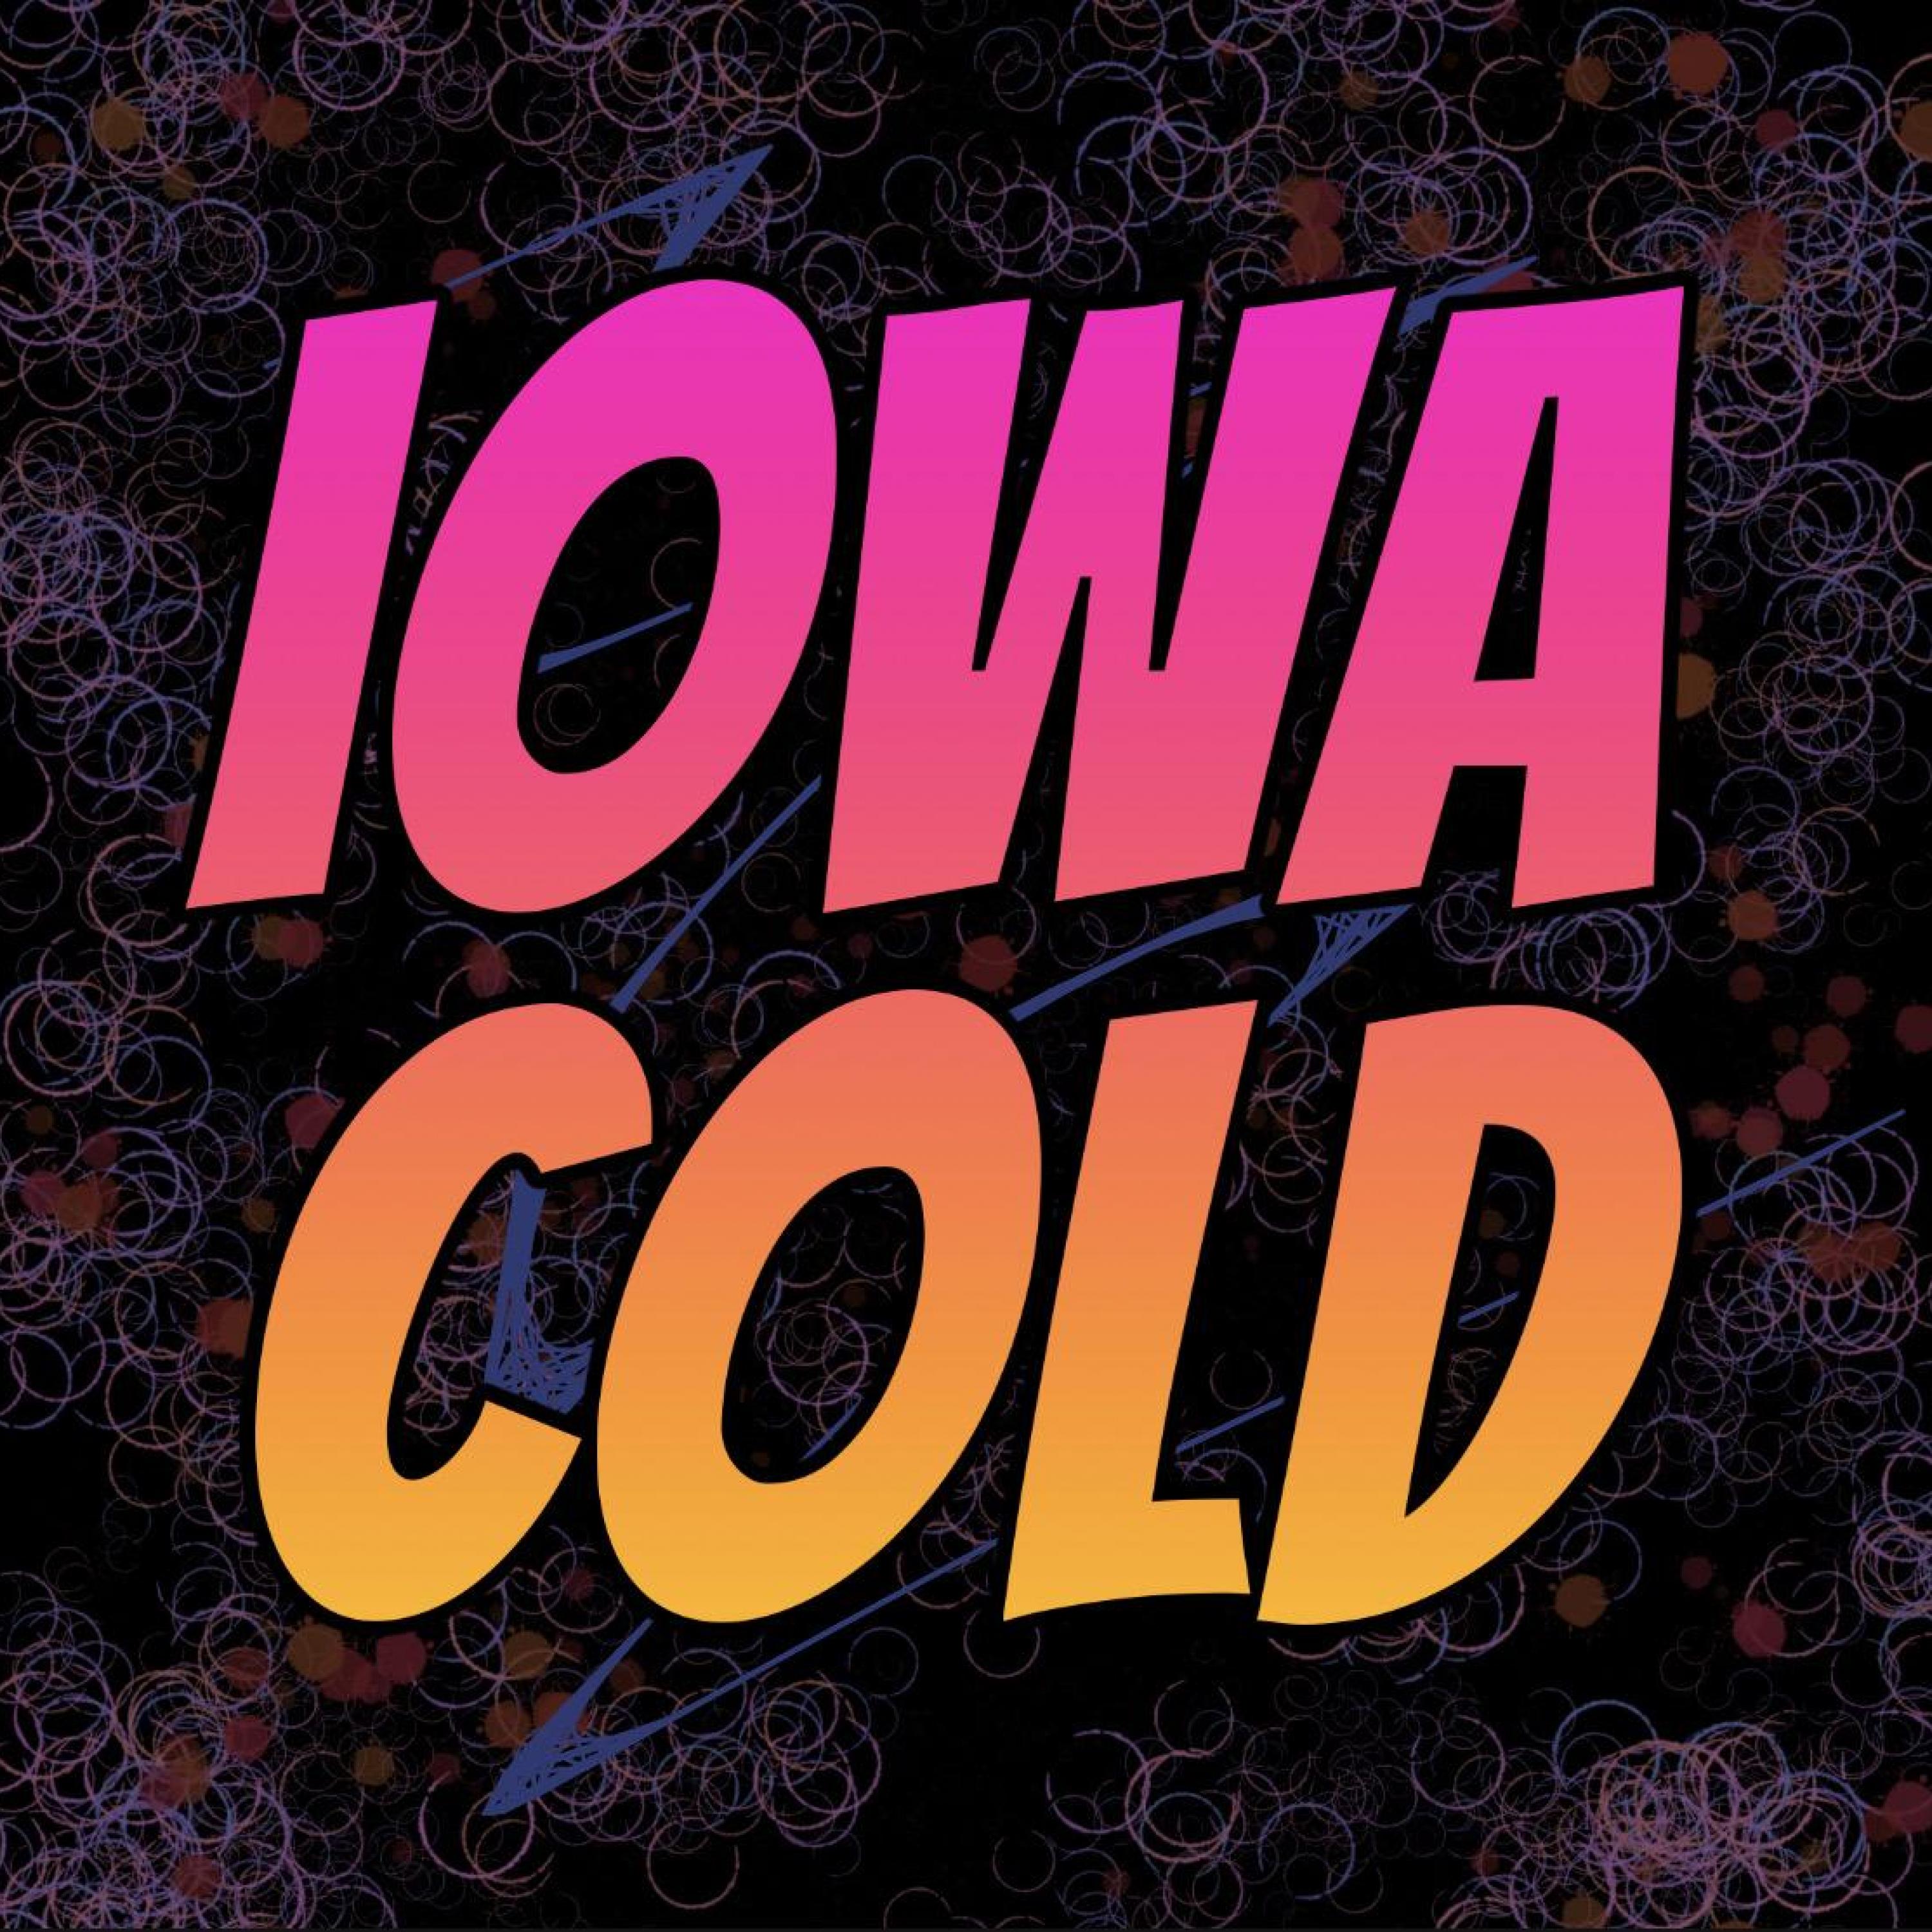 Iowa Cold